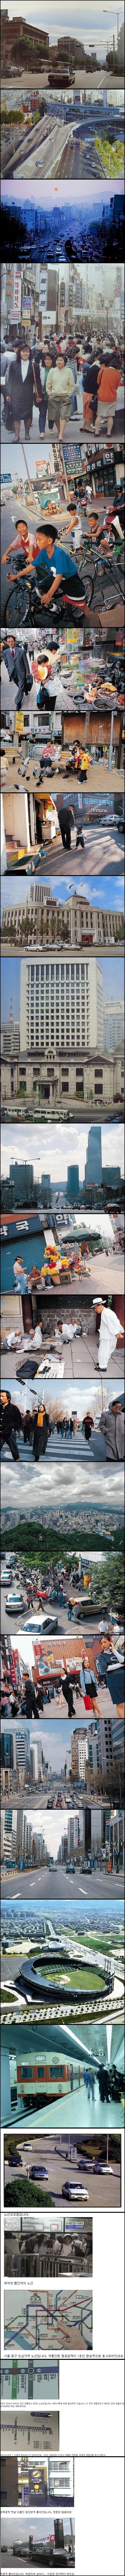 1990년도의 서울2.jpg